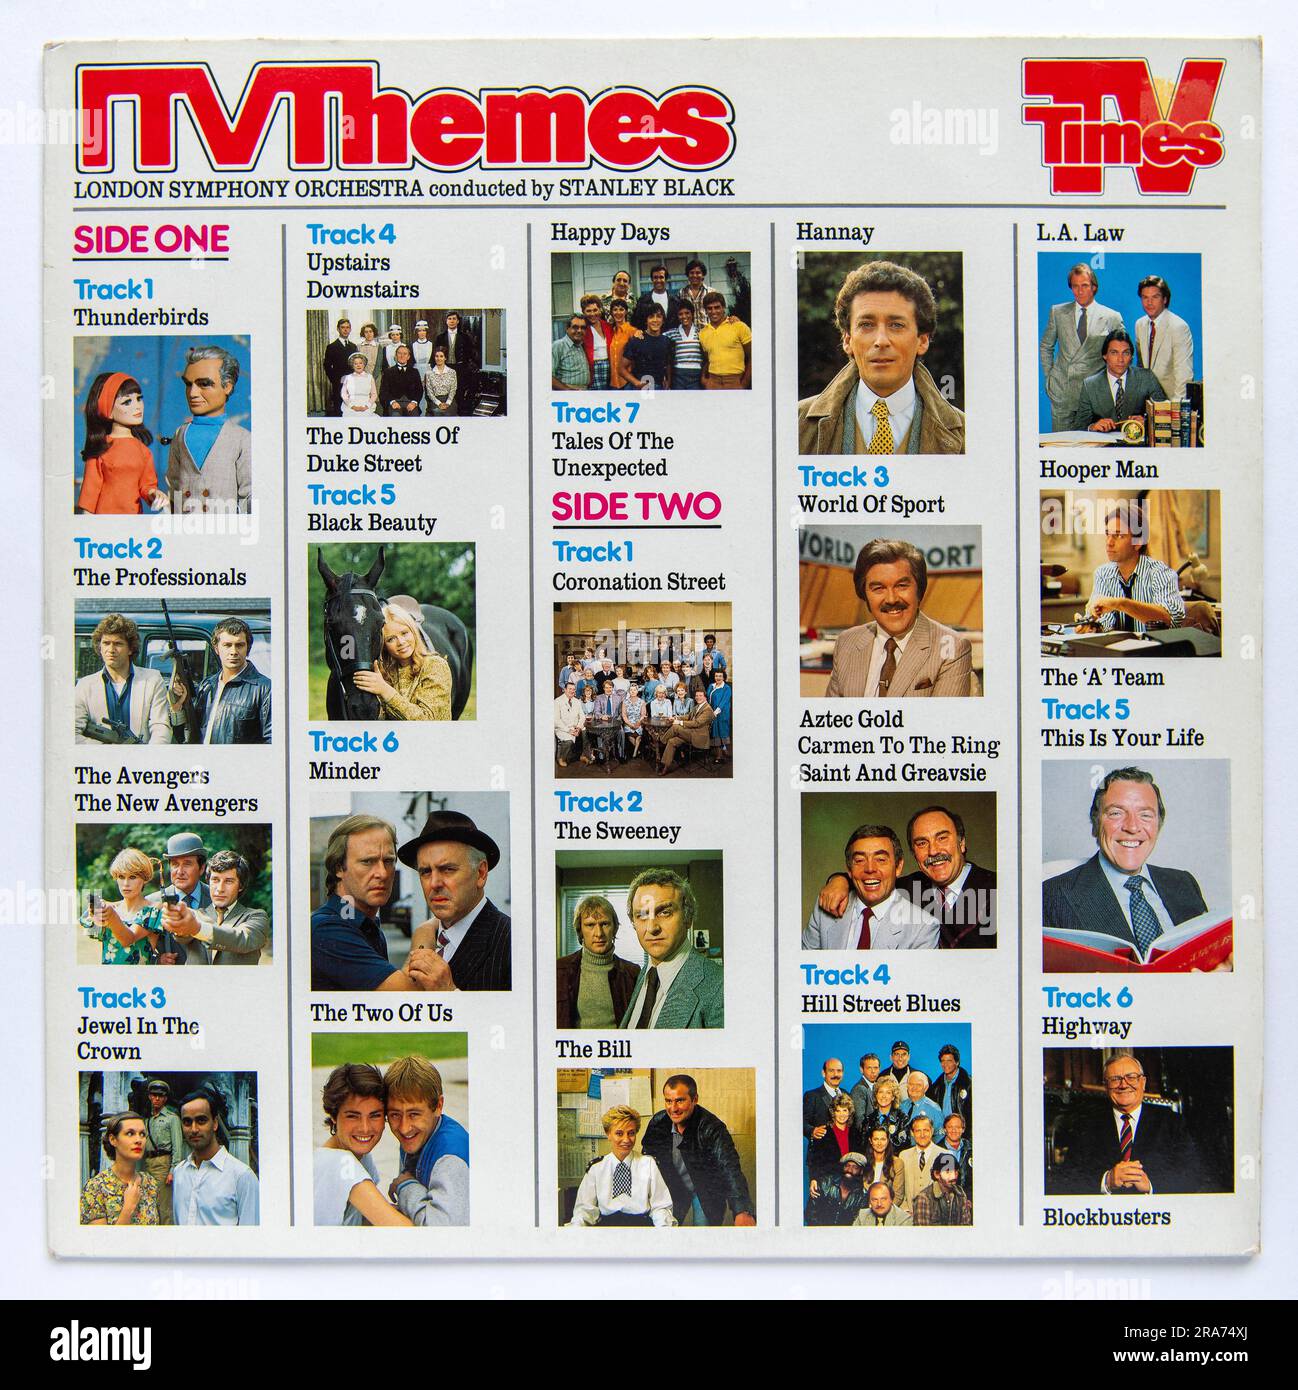 LP couverture de l'album de thèmes de télévision ITV Themes Banque D'Images